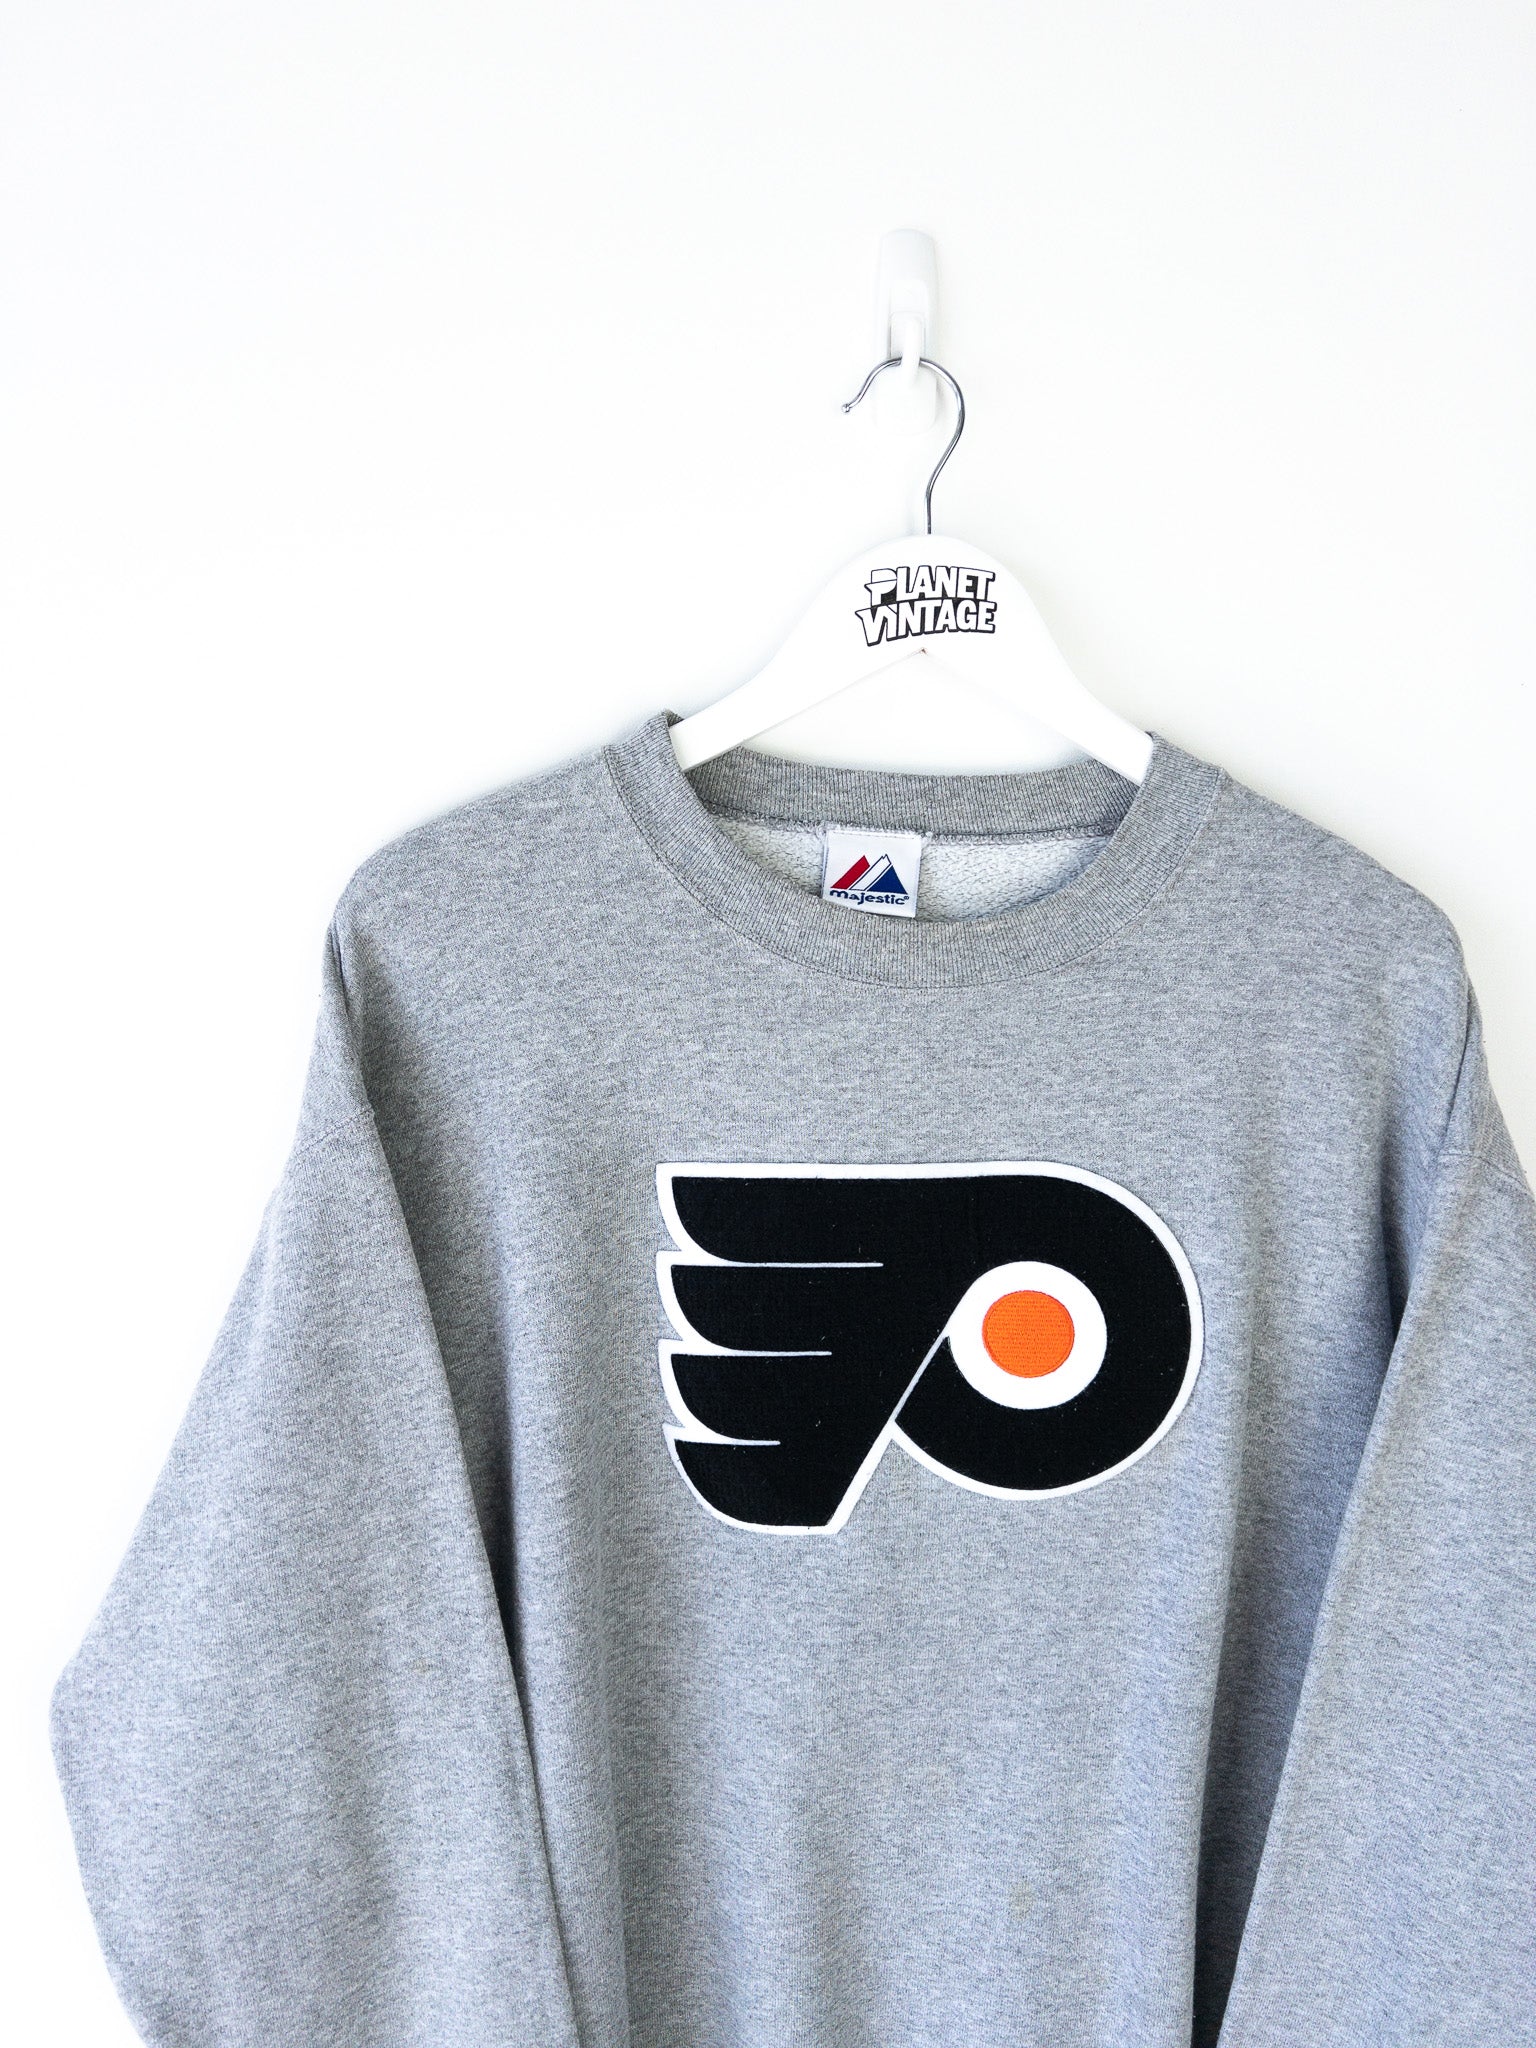 Vintage Philadelphia Flyers Sweatshirt (L)